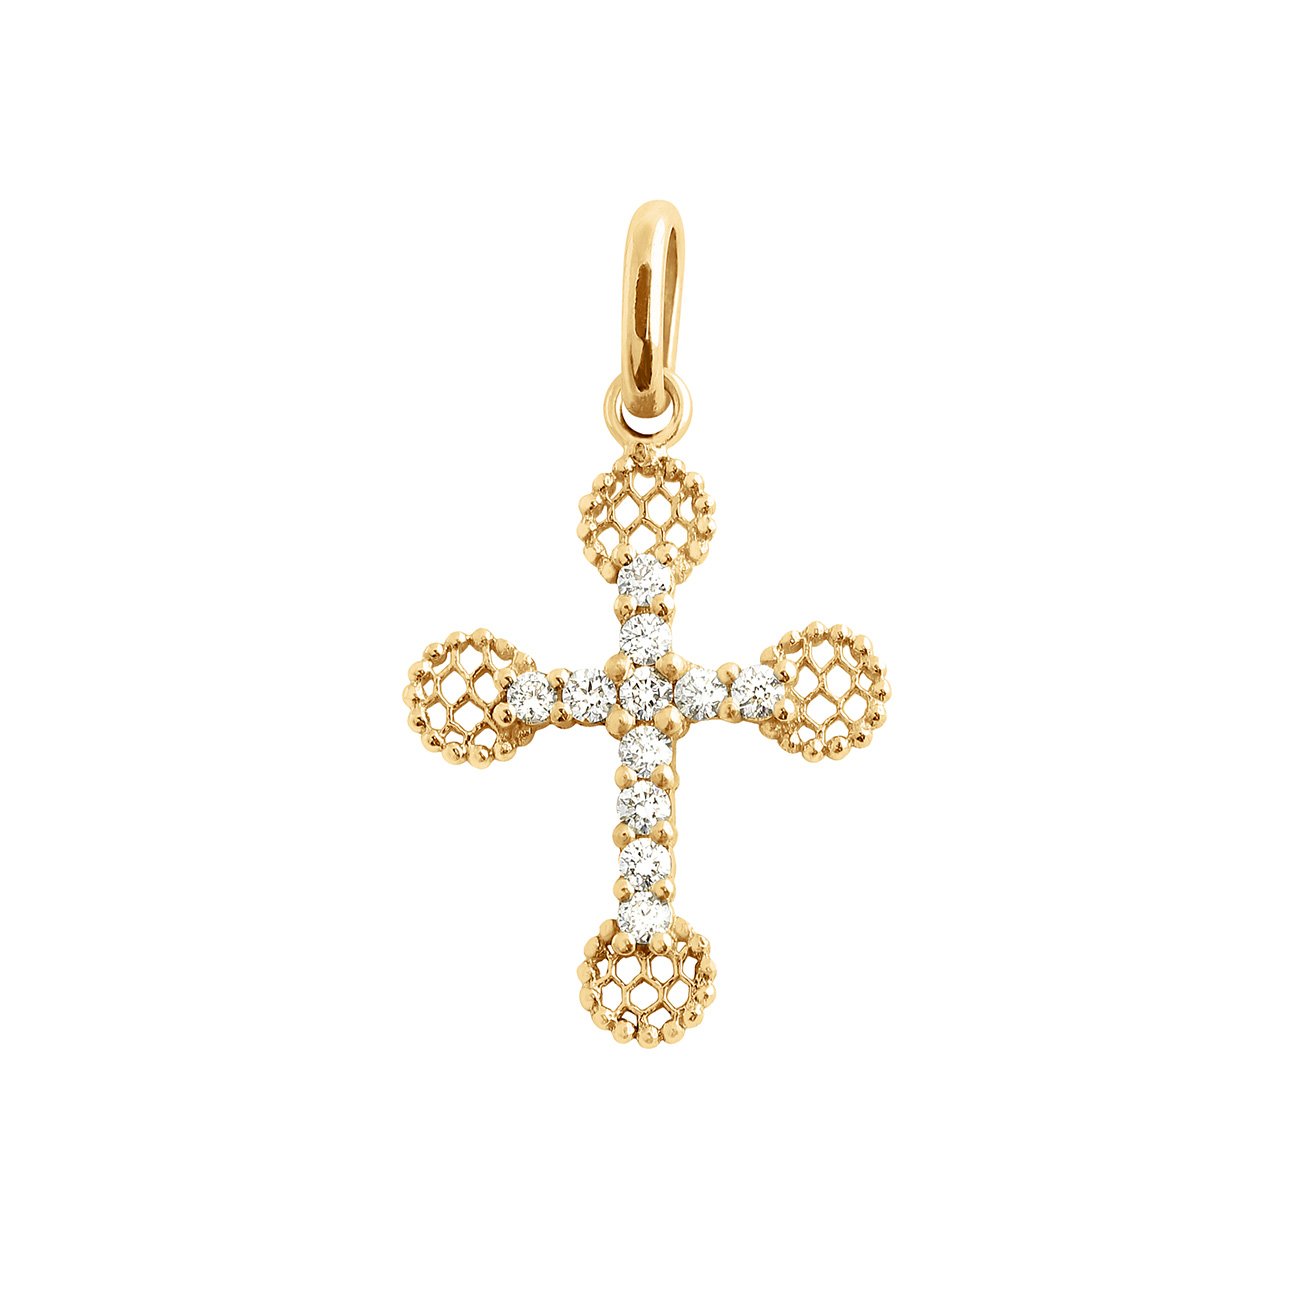 Pearled Cross Diamond Necklace, Black, Yellow Gold, 16.5 – Gigi Clozeau -  Jewelry